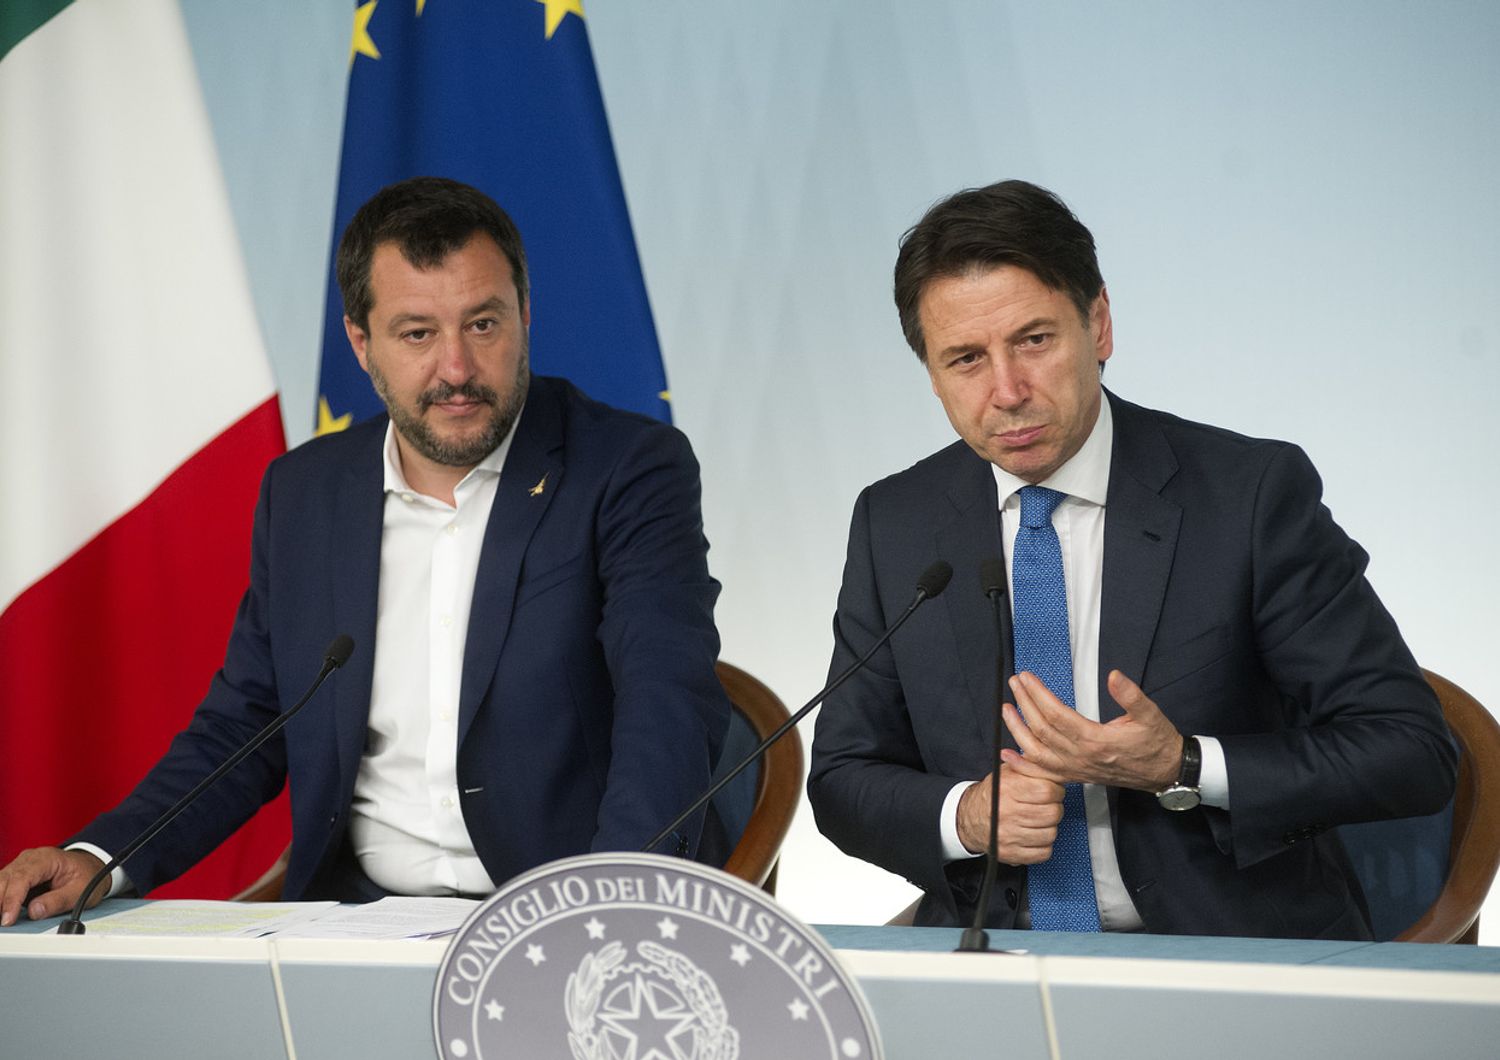 Roma 11/06/2019, conferenza stampa del consiglio dei ministri. Nella foto Matteo Salvini, Giuseppe Conte&nbsp;